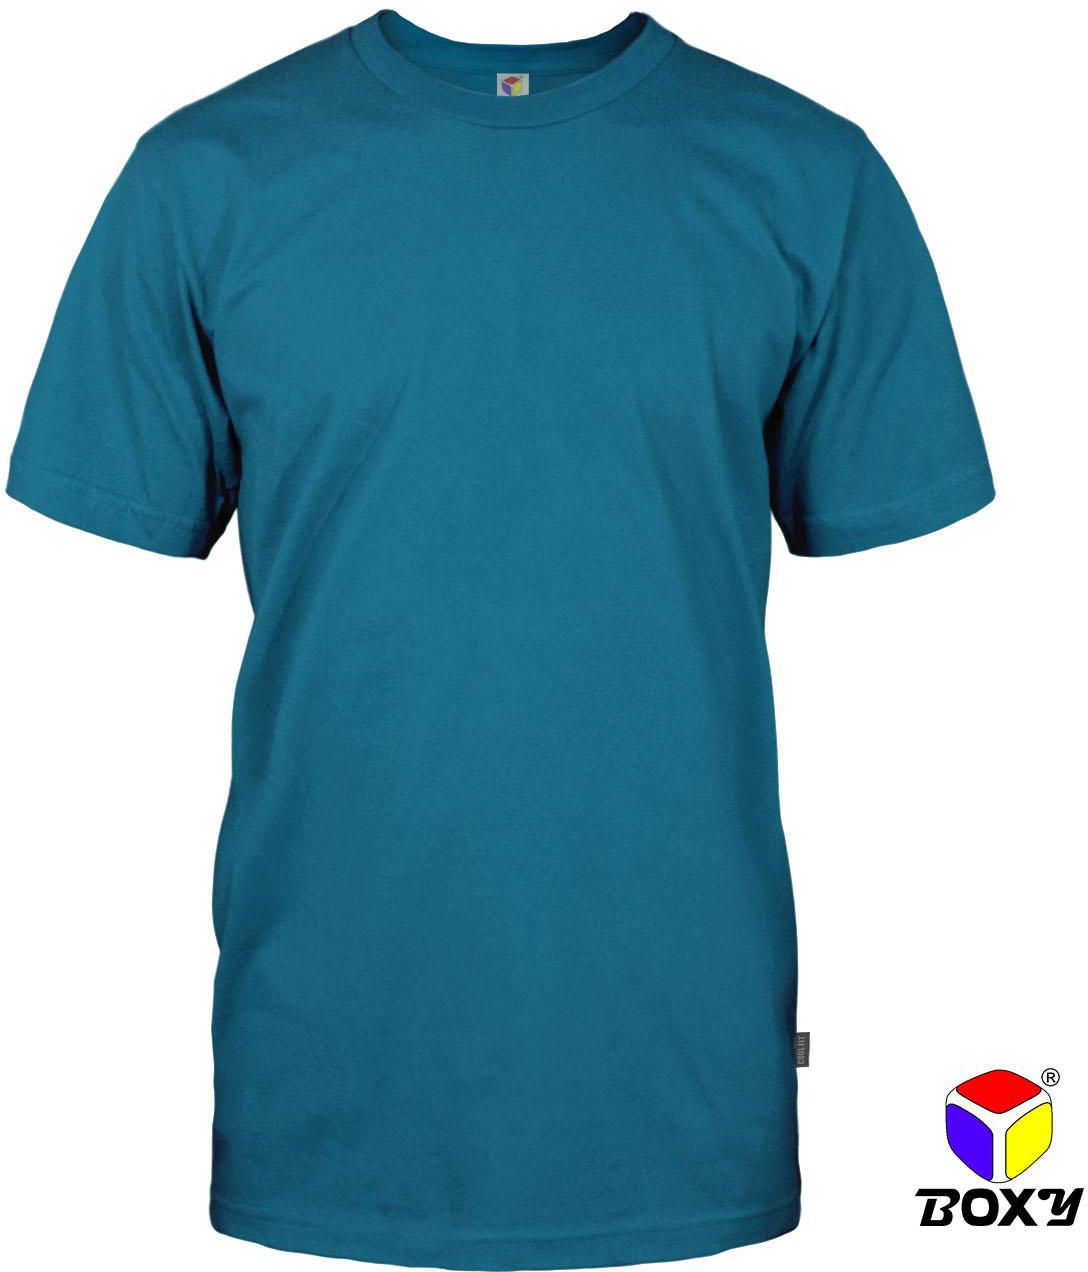 Boxy Microfiber Round Neck Plain T-shirt - 7 Sizes (Turquoise Blue)